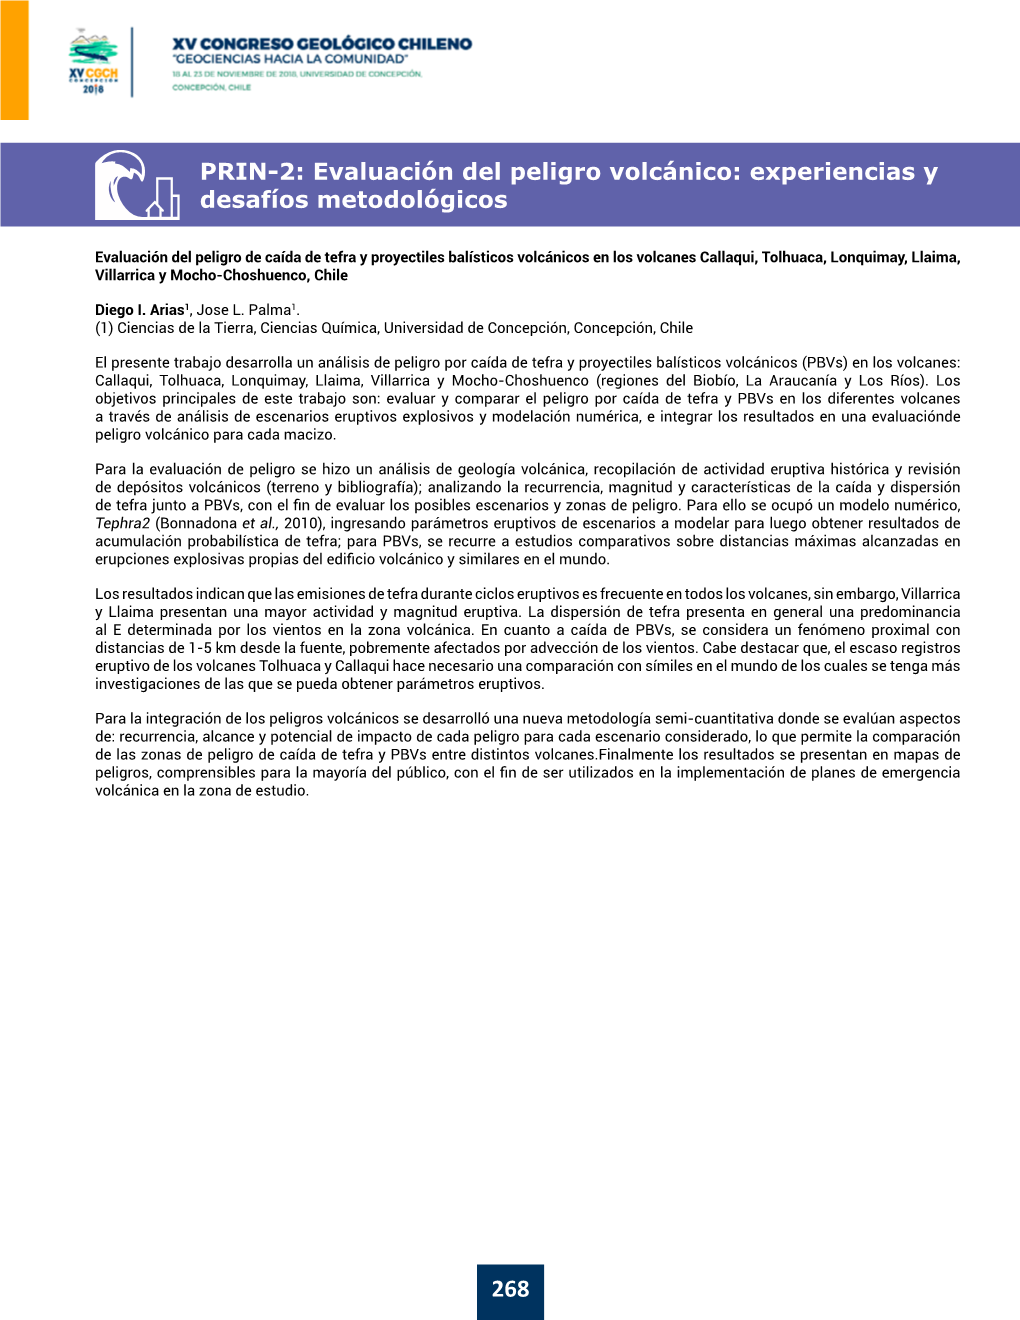 PRIN-2: Evaluación Del Peligro Volcánico: Experiencias Y Desafíos Metodológicos